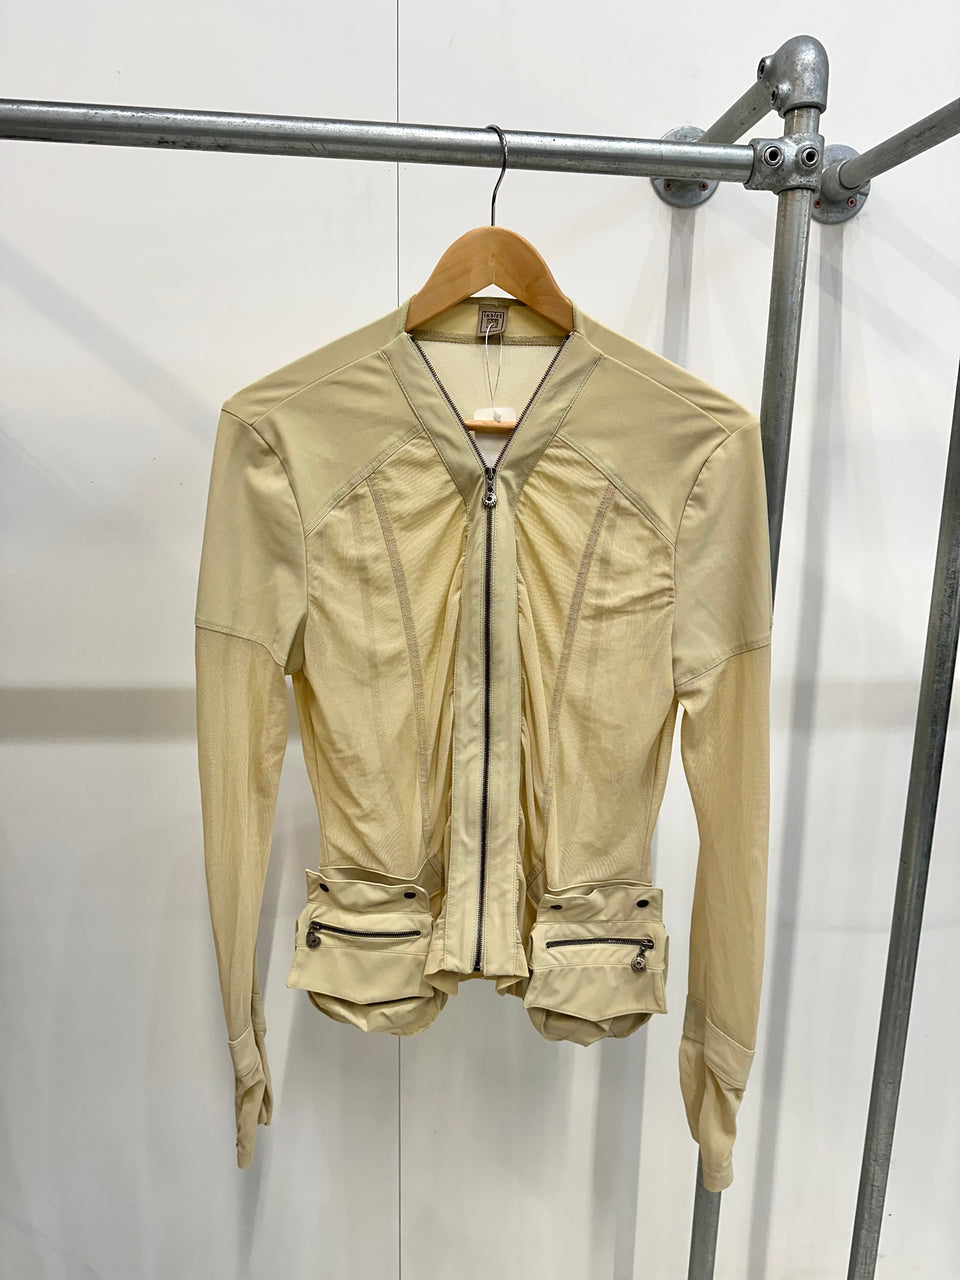 Vintage indies mesh jacket - M/L